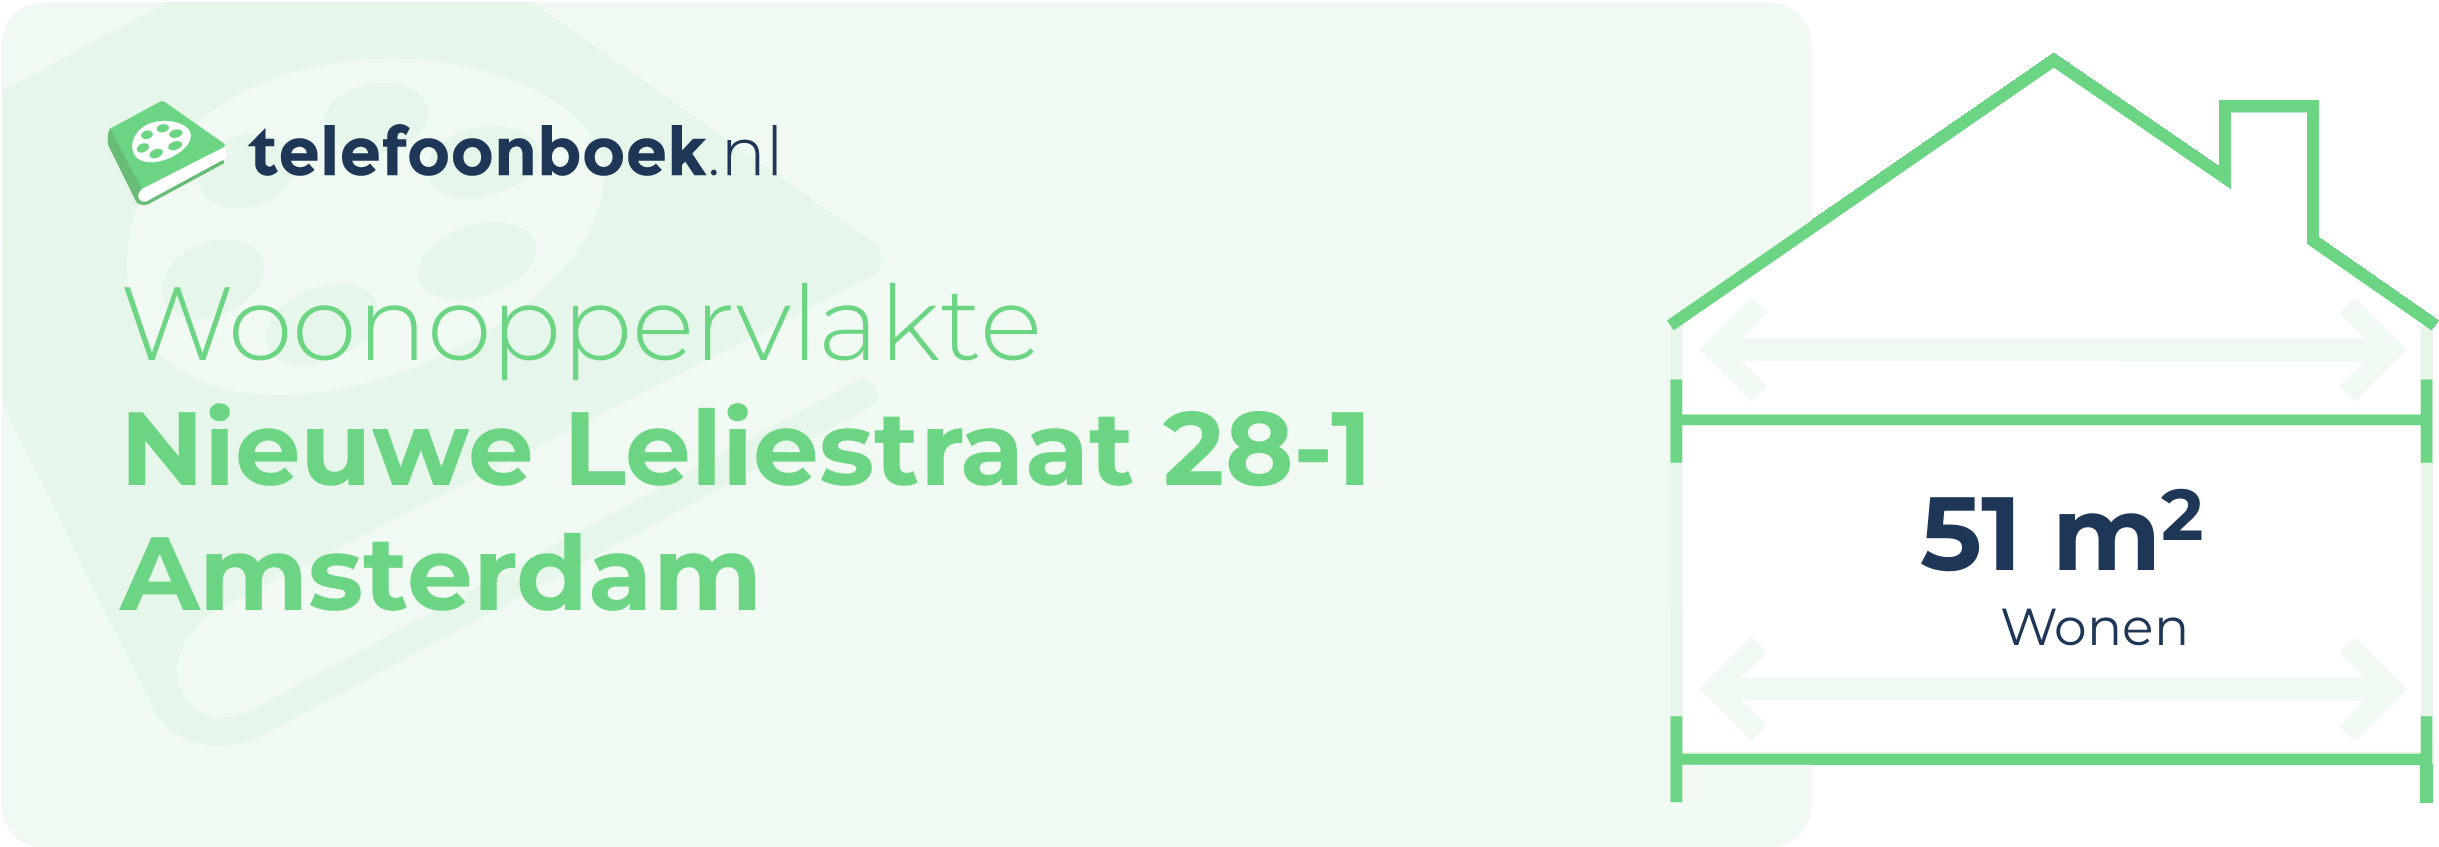 Woonoppervlakte Nieuwe Leliestraat 28-1 Amsterdam